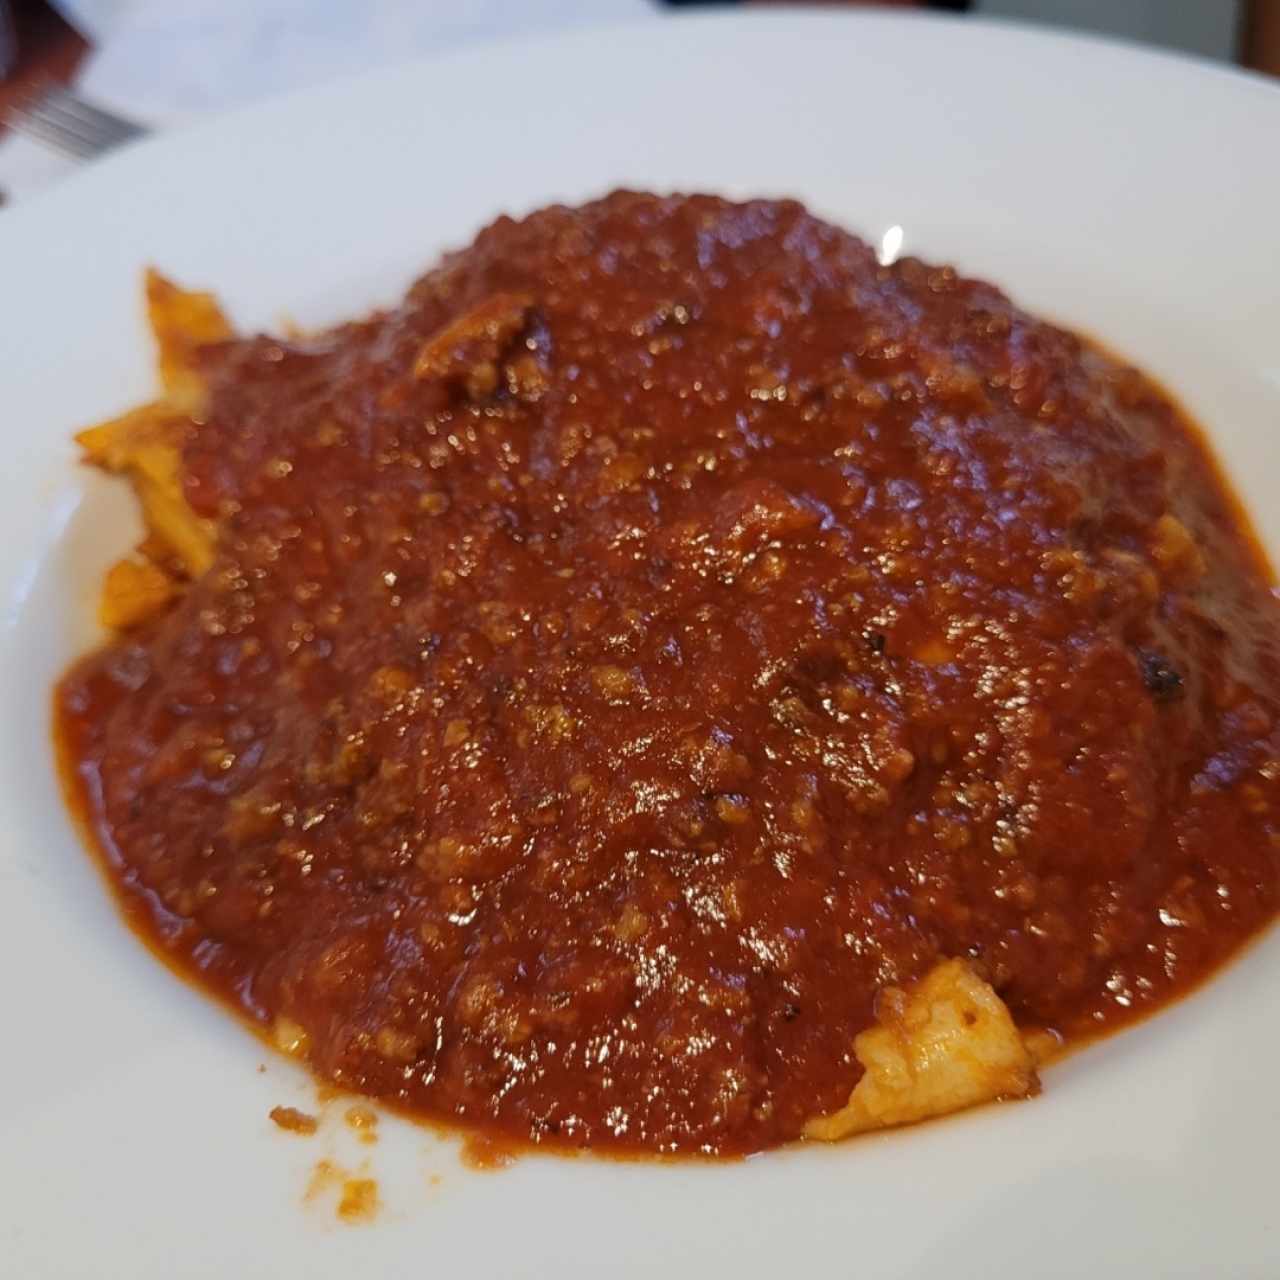 Pastas - Lasagna De carne